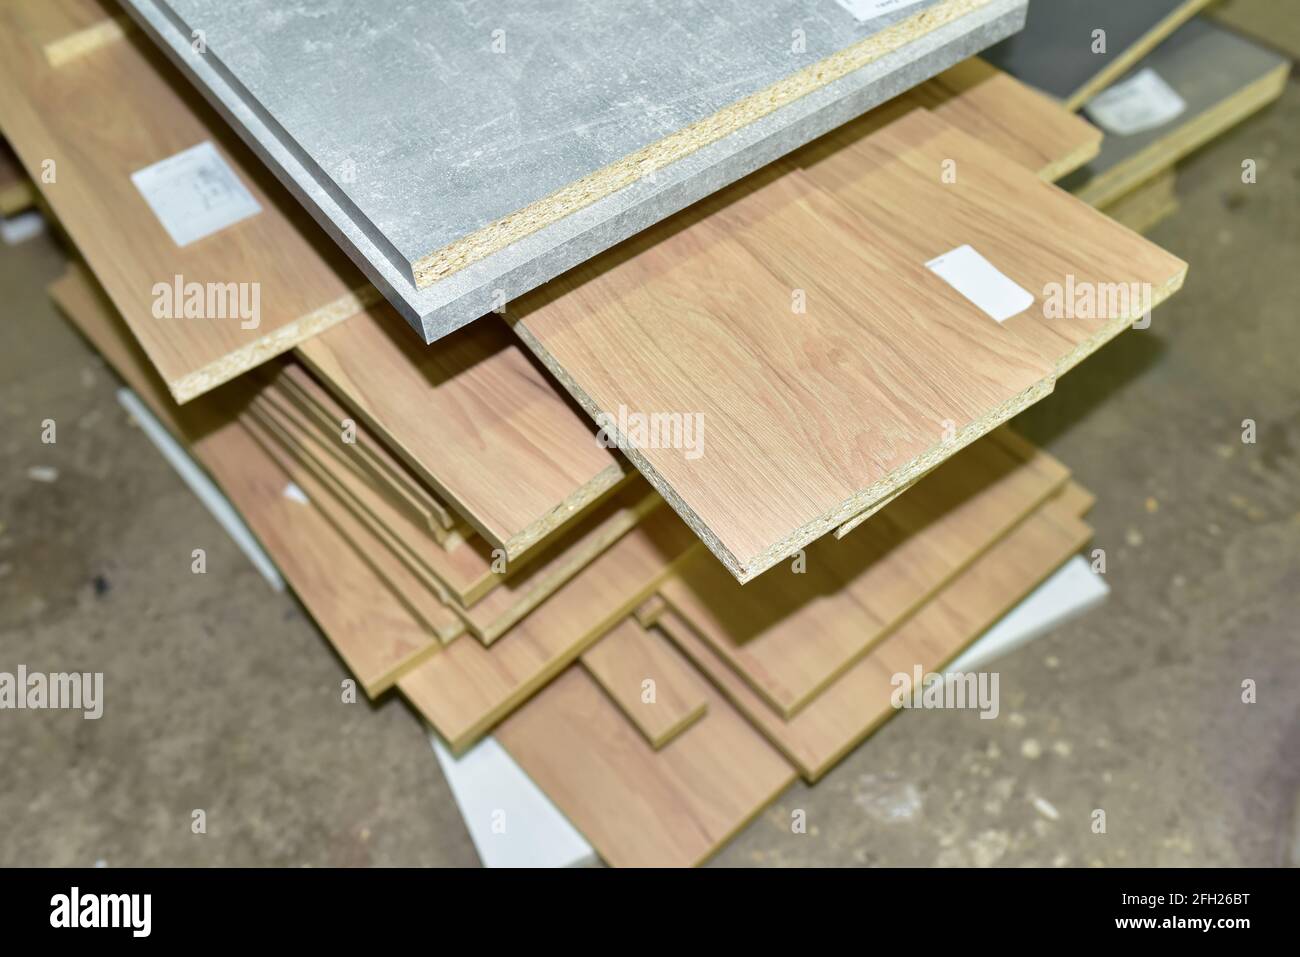 Fragment d'un panneau en bois fait de panneau de fibres de bois dans l'atelier. Panneaux de fibres moyenne densité (MDF). Industrie du travail du bois et concept d'assemblage de meubles. Banque D'Images